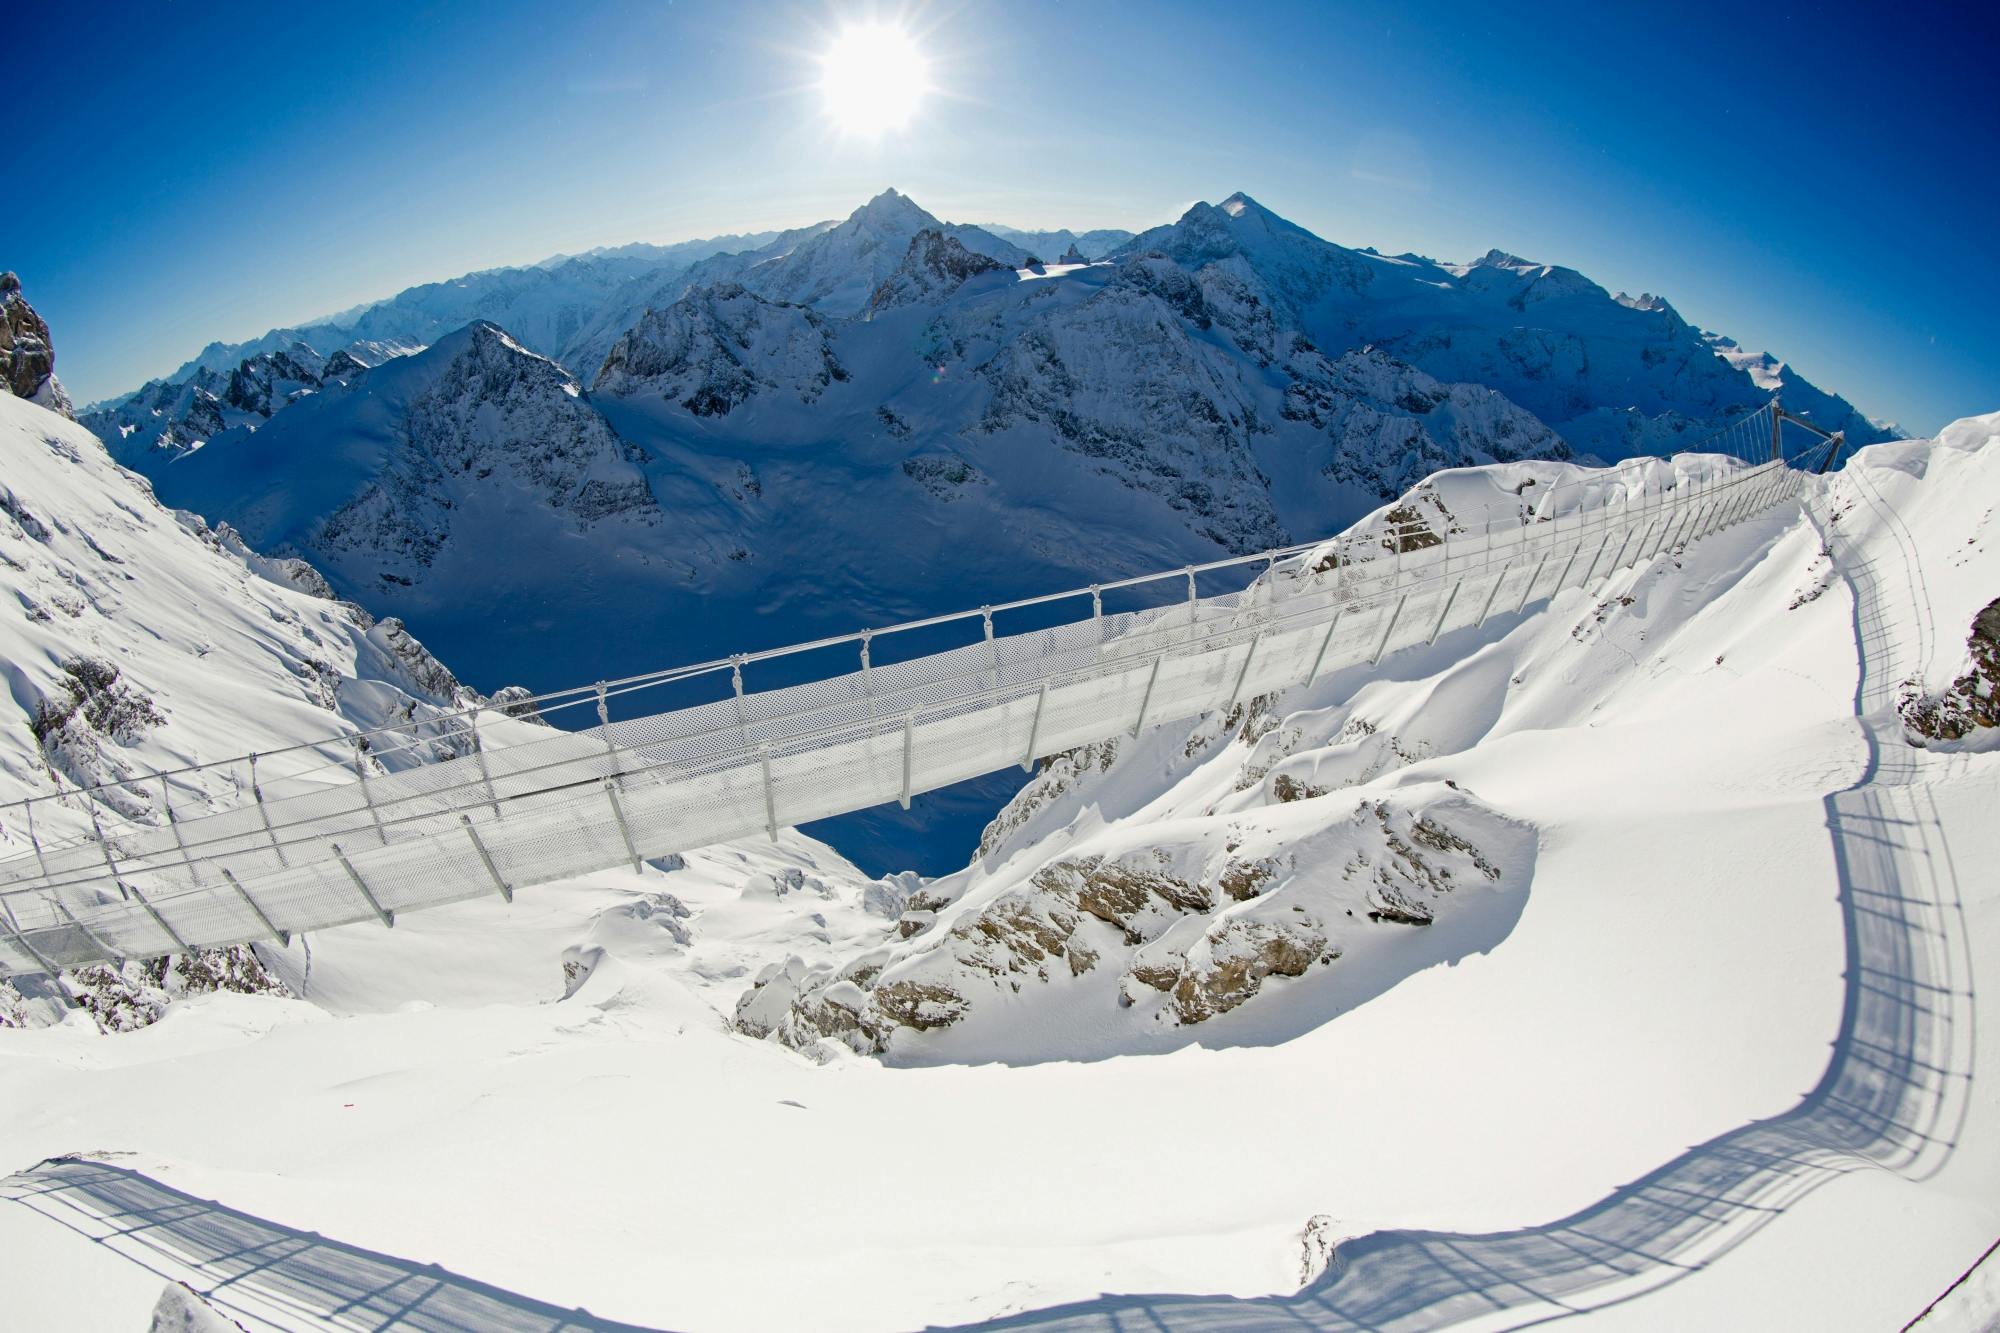 Halbtagesausflug zum ewigen Schnee und Gletscher des Titlis ab Luzern